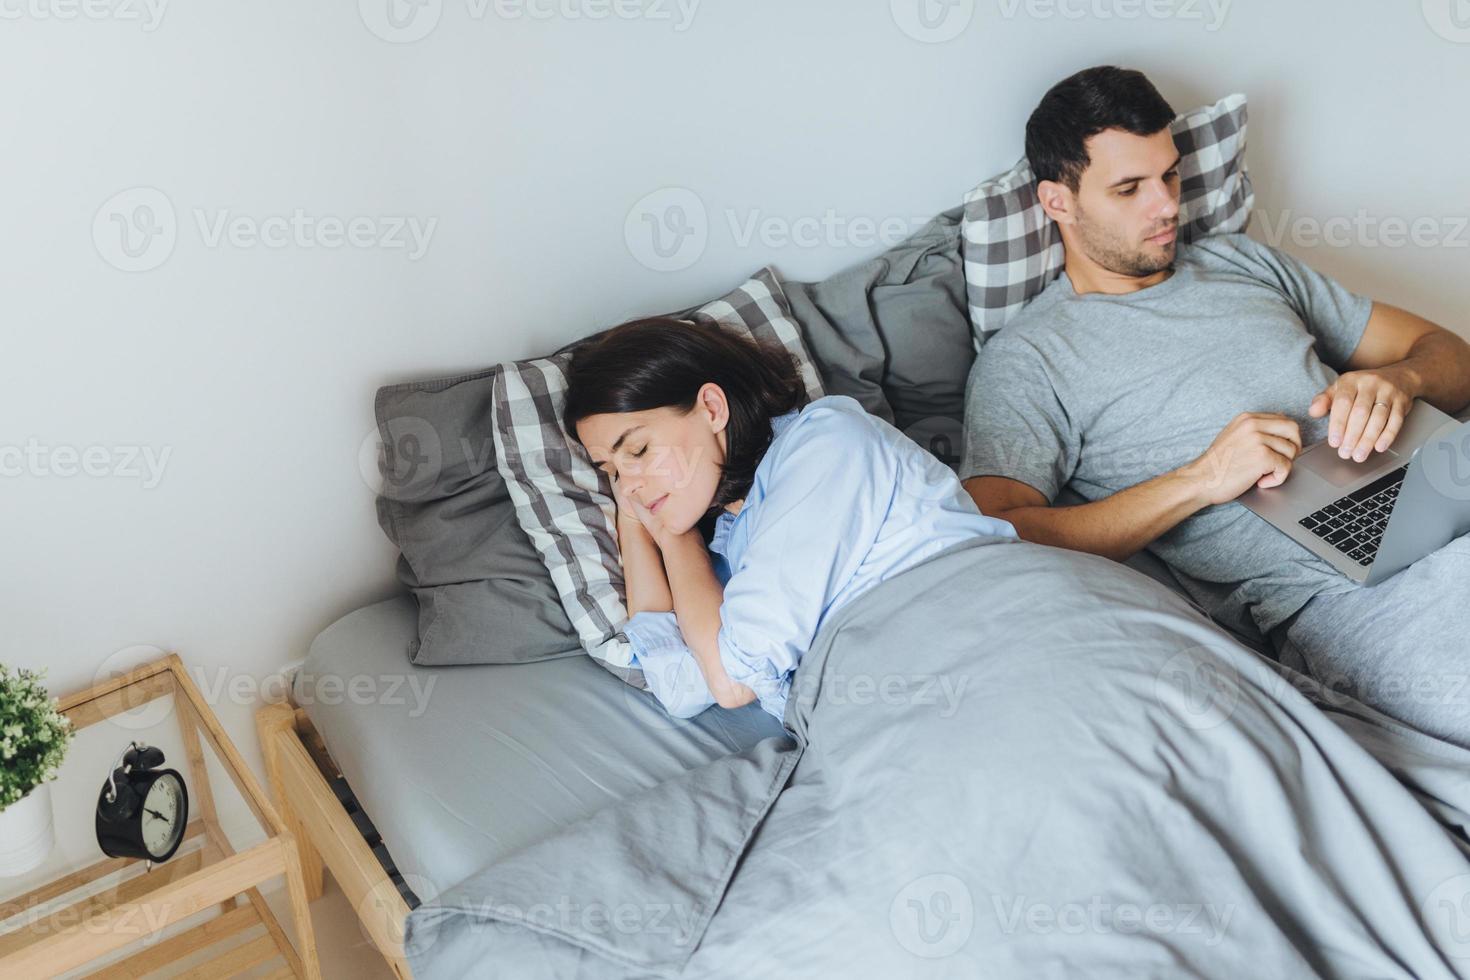 une jolie femme dort dans son lit, voit des rêves agréables, tandis que son mari travaille sur un ordinateur portable, prépare un rapport, essaie de ne pas interrompre le sommeil de sa femme. couple familial dans la chambre. notion de repos. photo